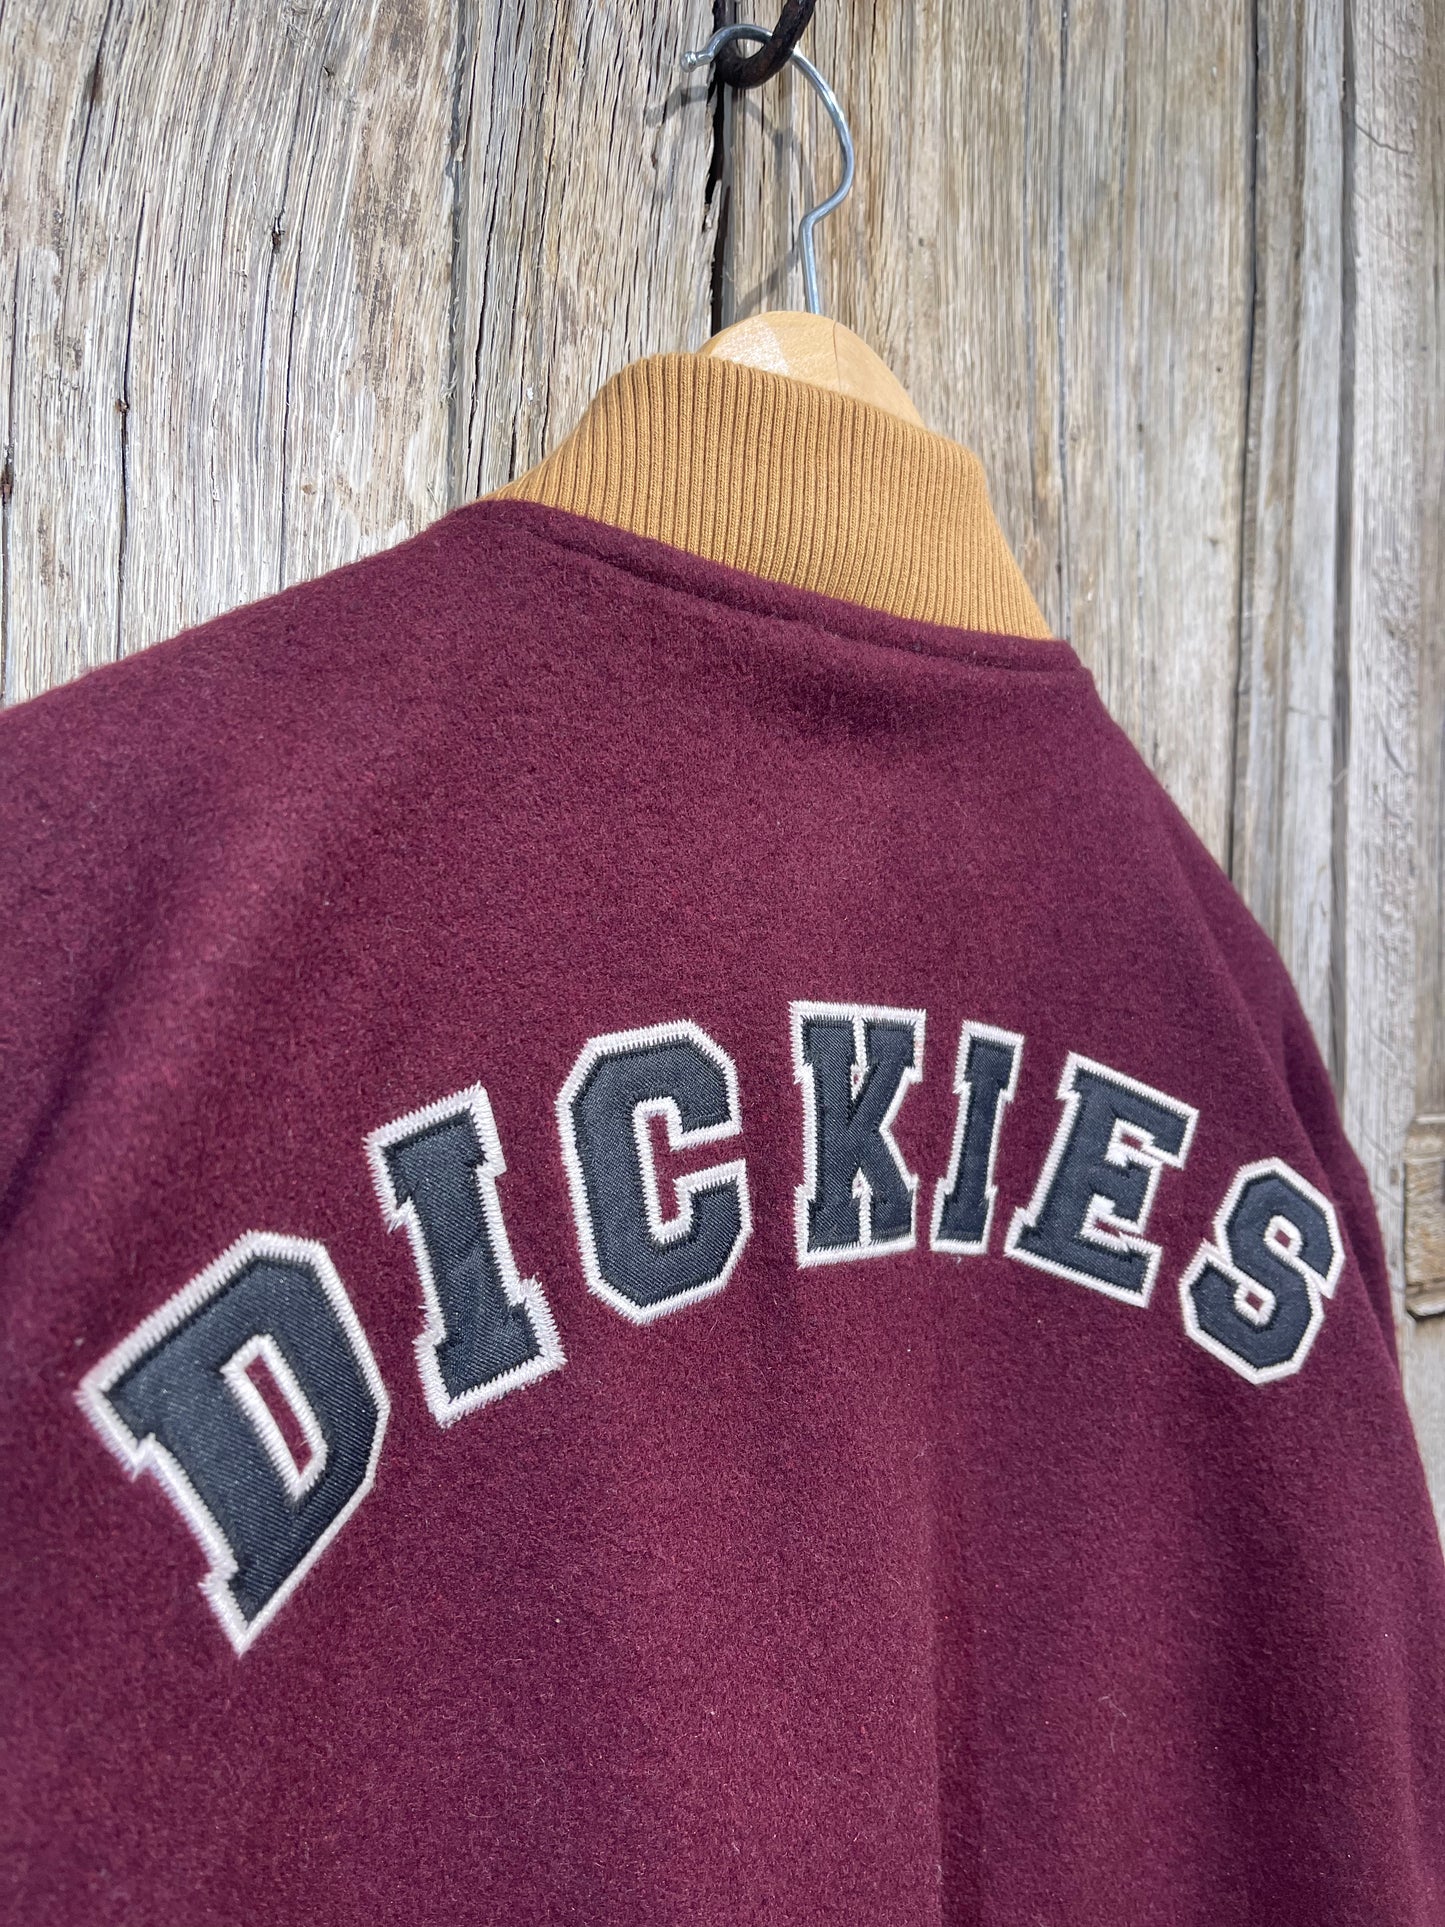 Dickies Sample Varsity Jacket